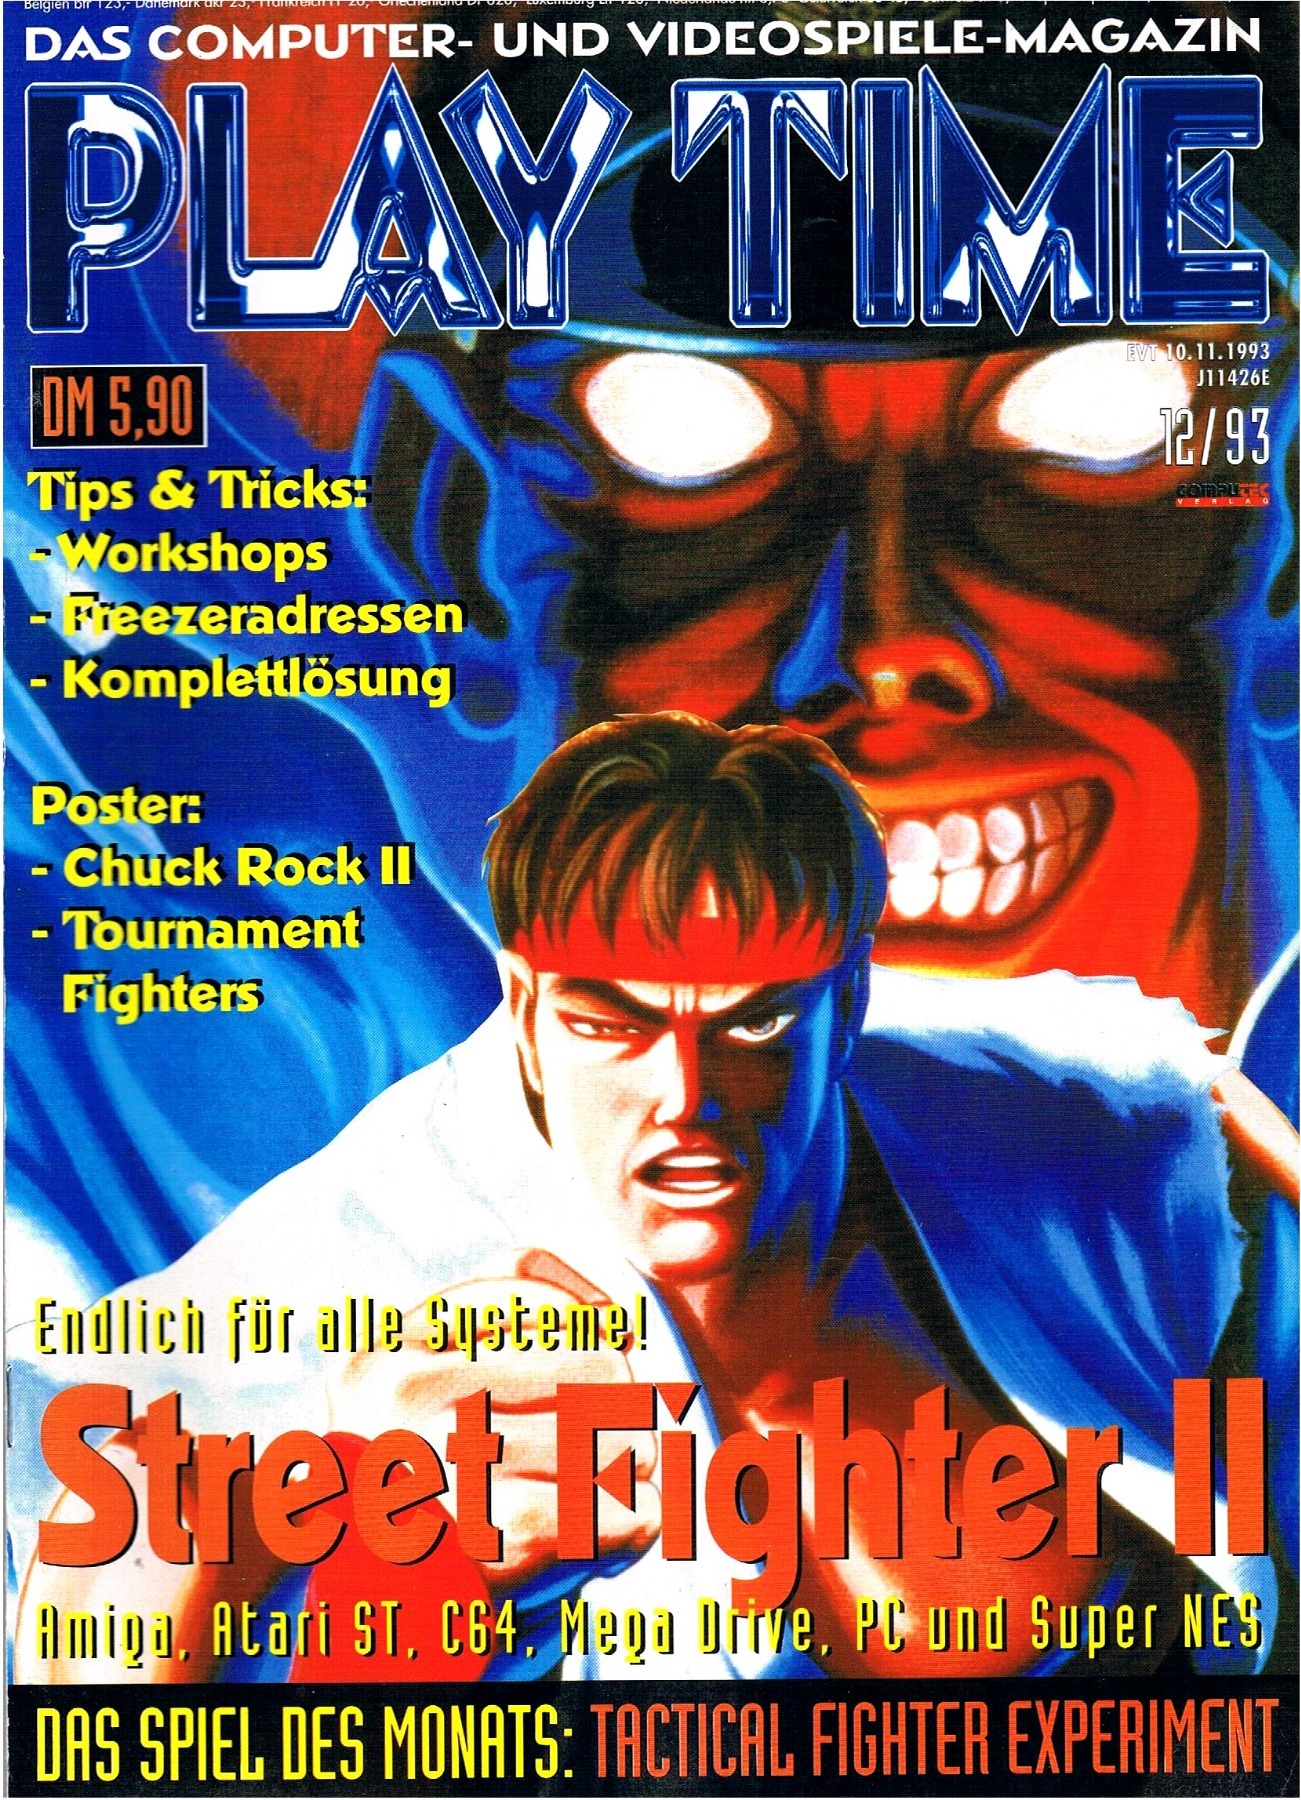 Play Time - Das Computer- und Videospiele-Magazin - Ausgabe 12/93 1993